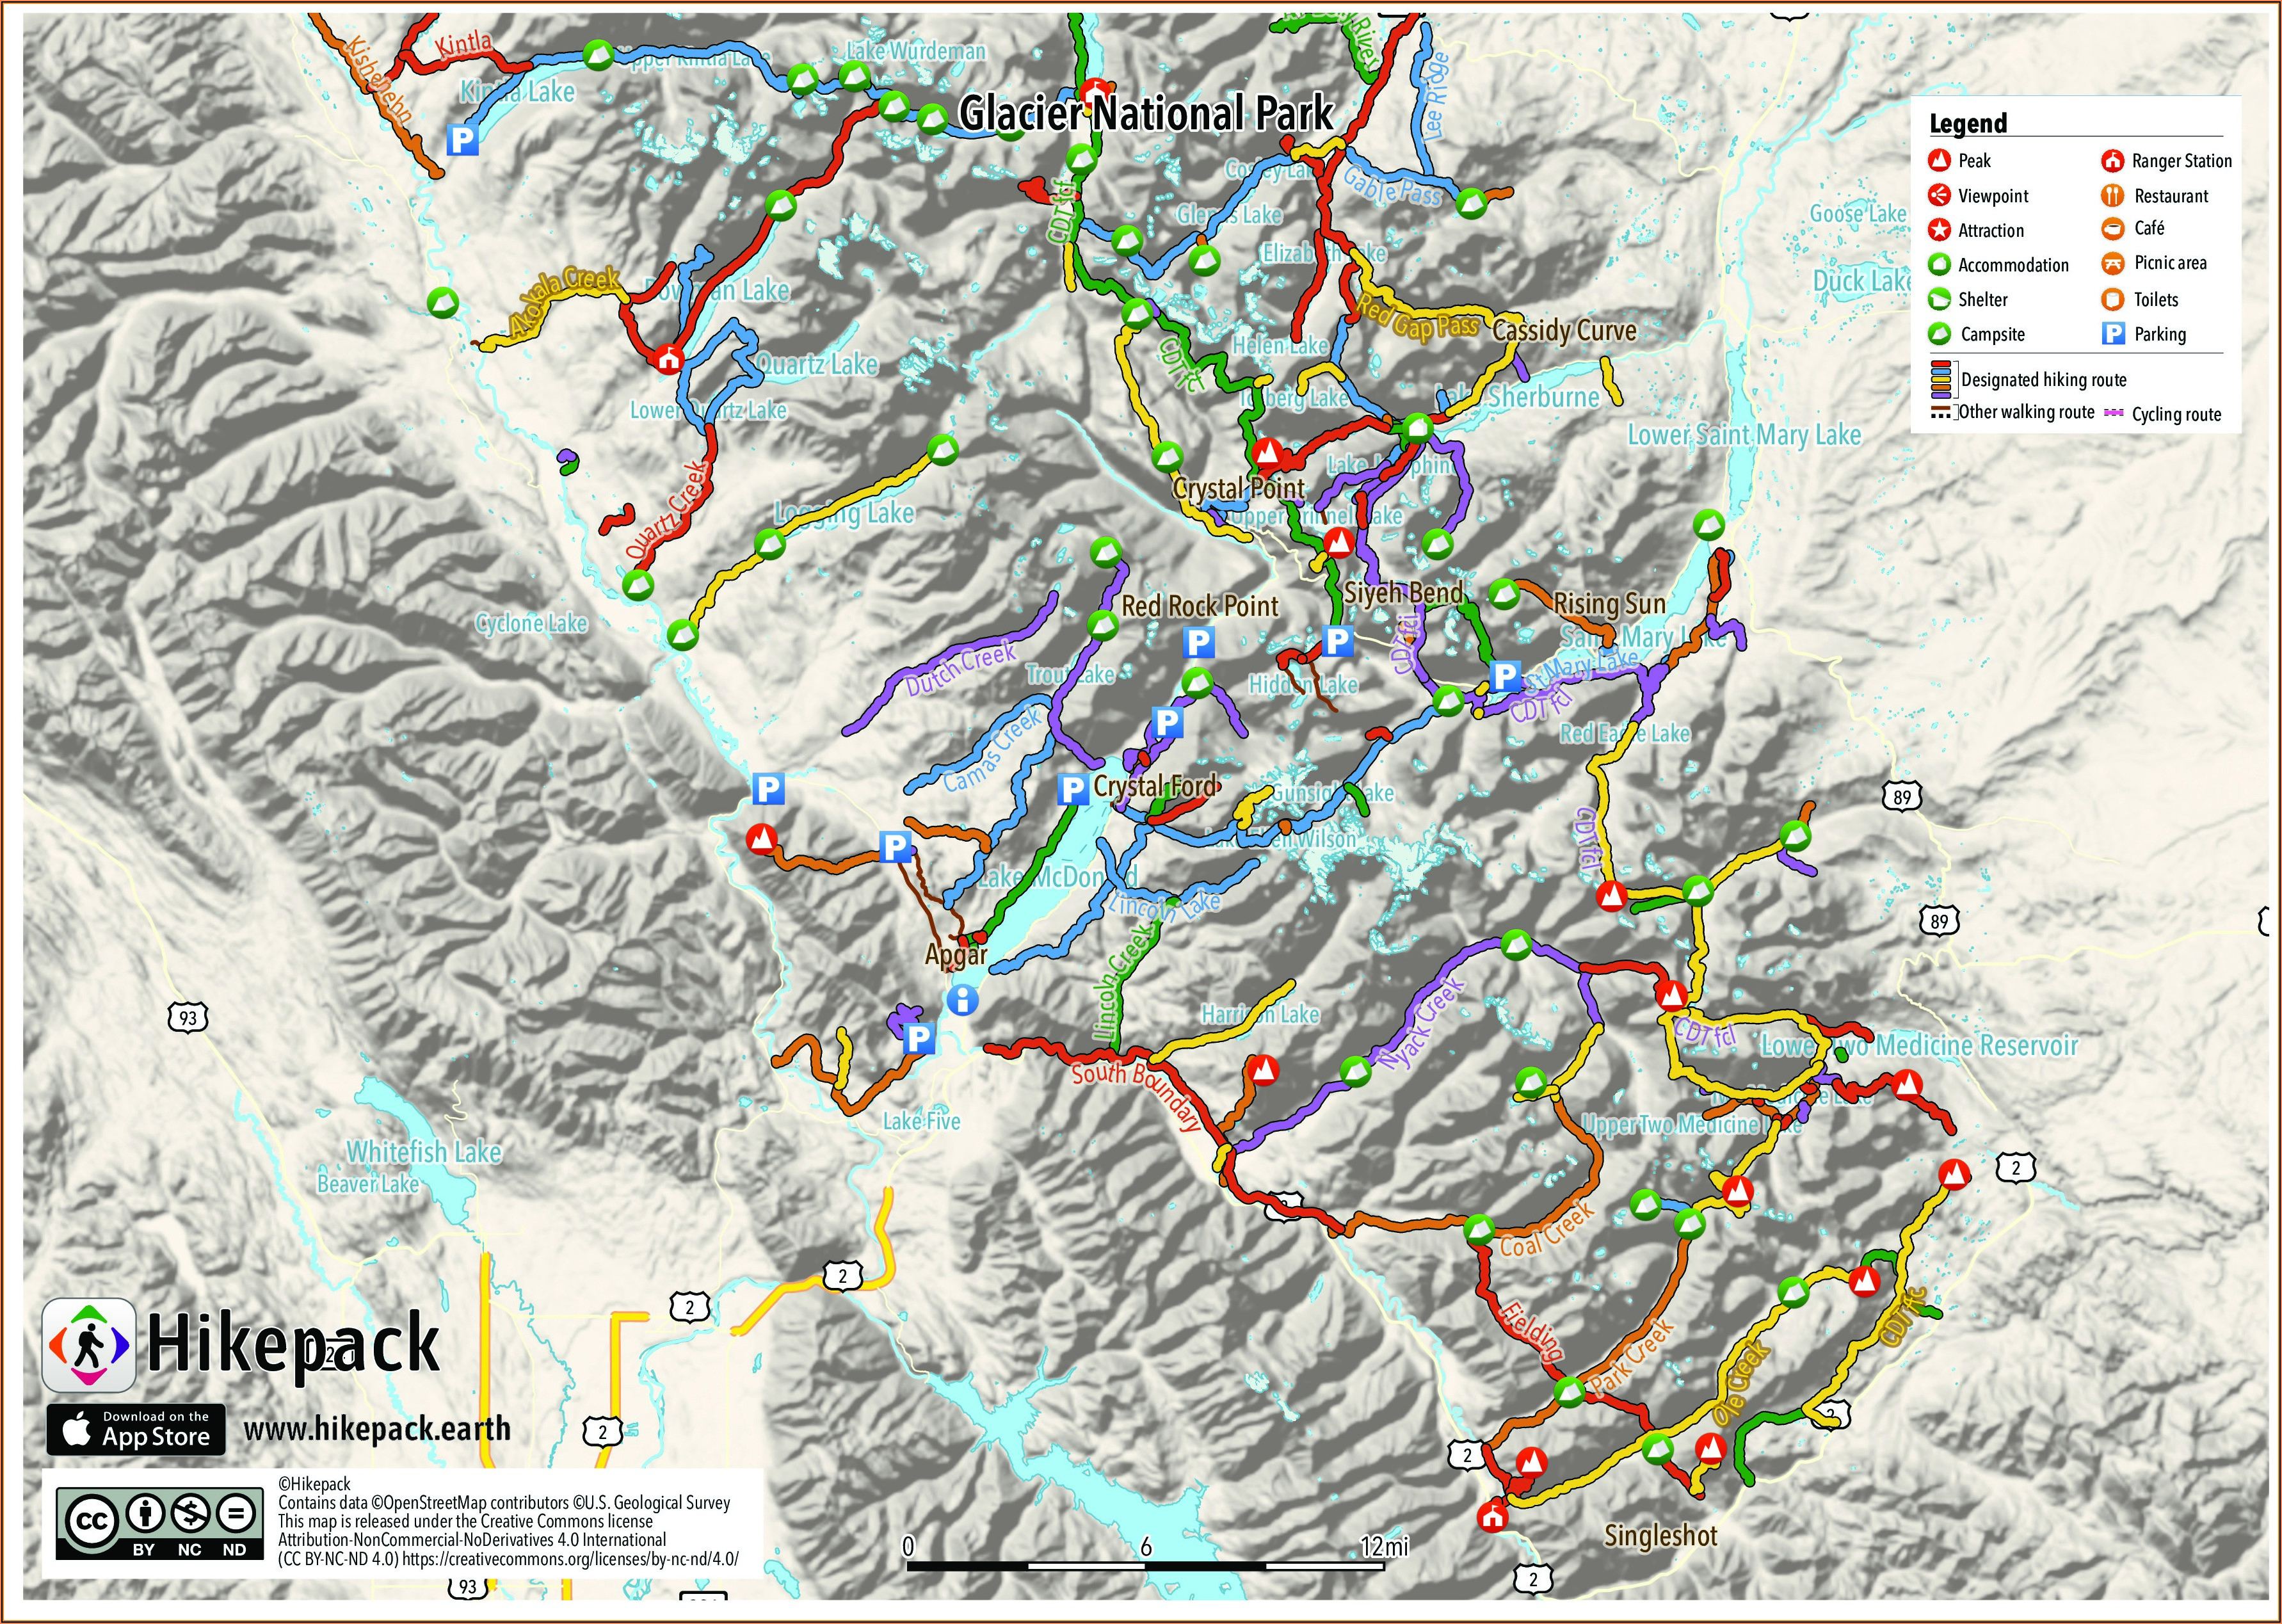 Glacier National Park Hiking Map Pdf